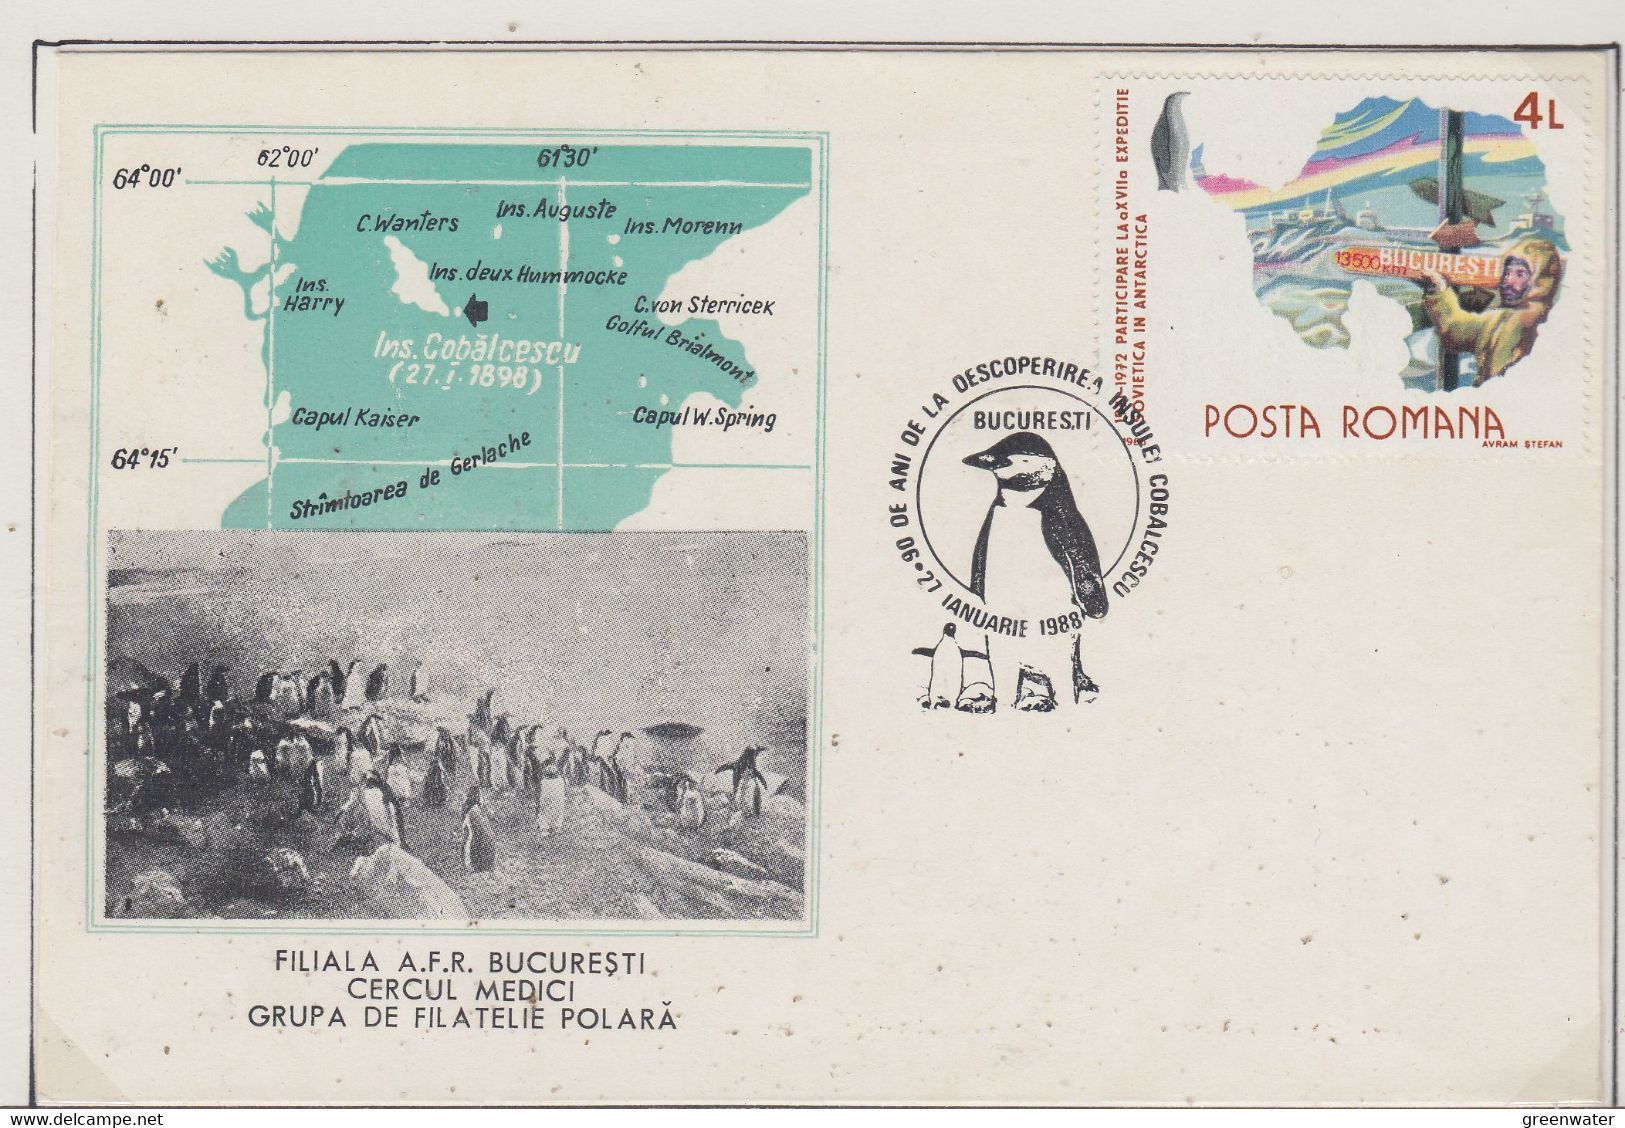 Romania  Antarctica  Cover Ca With Penguin Ca 27.1.1988 (XA167A) - Fauna Antártica